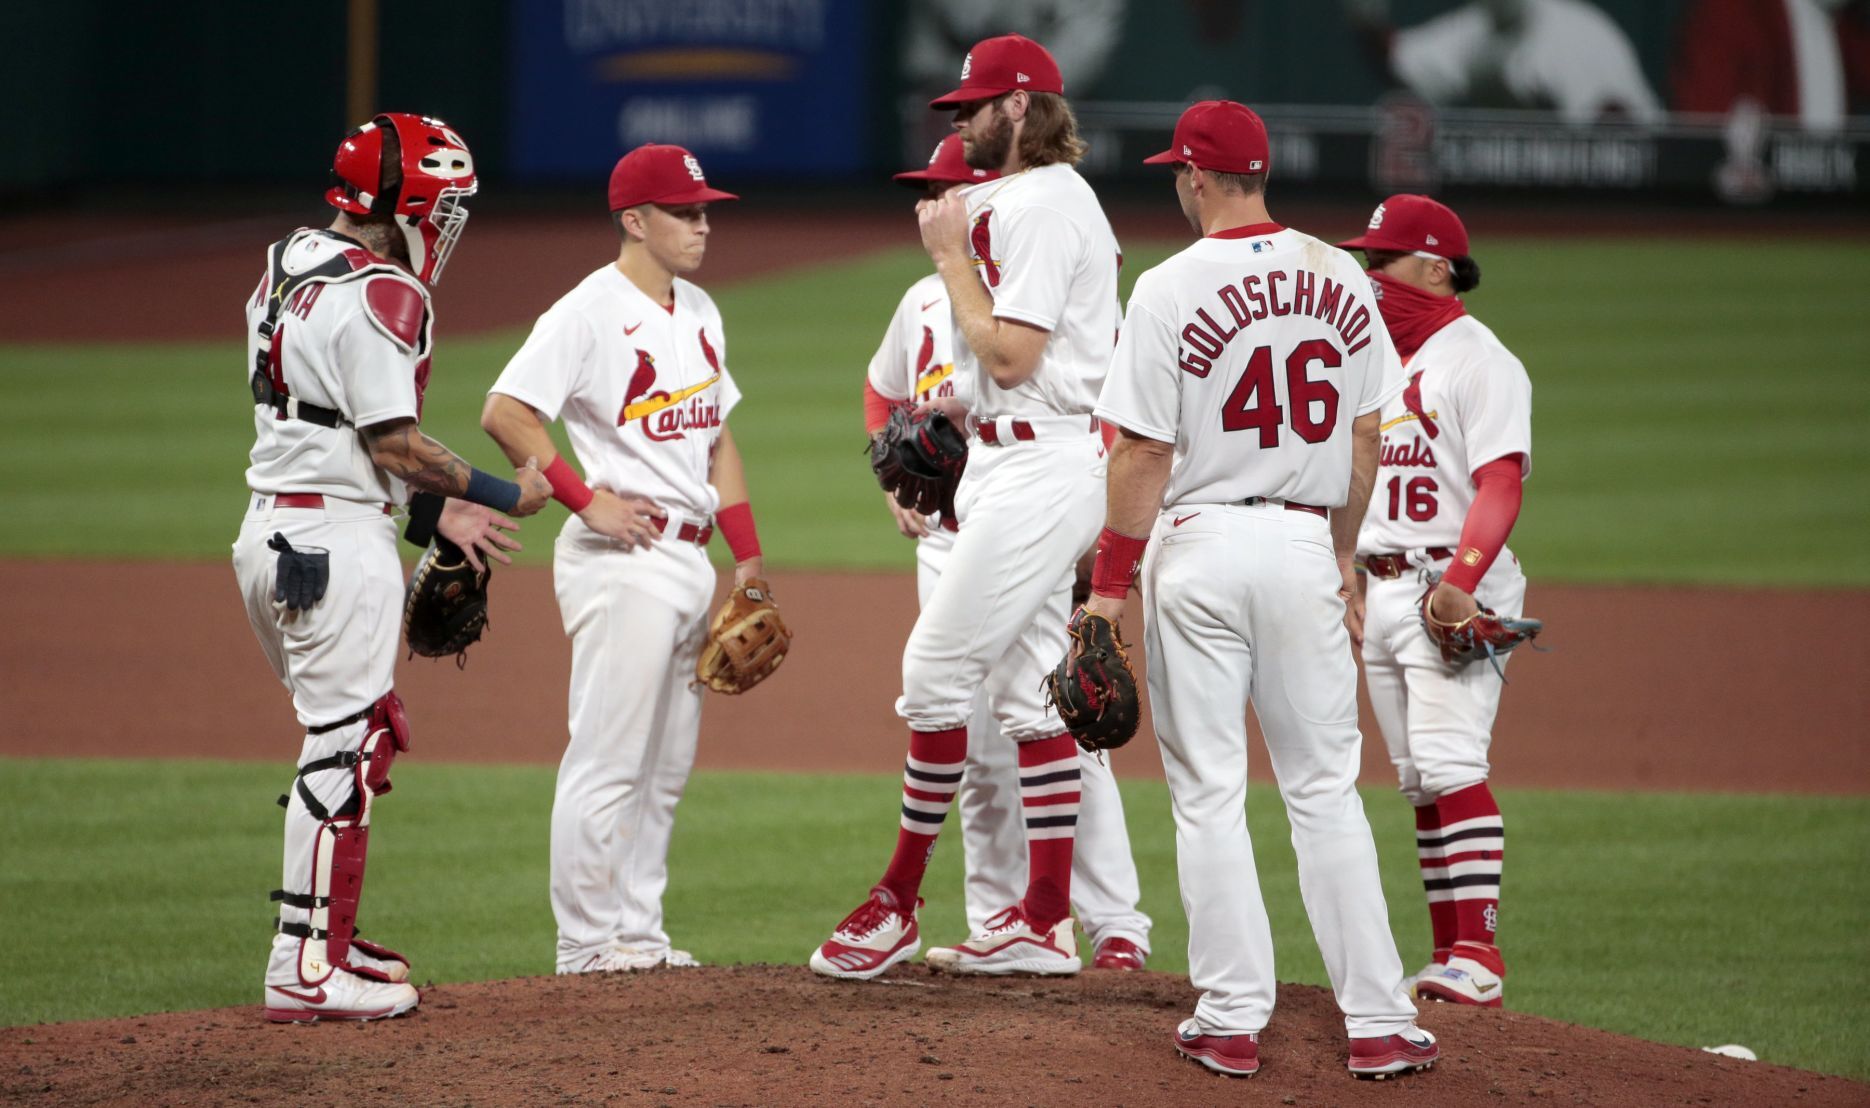 cardinals away uniform